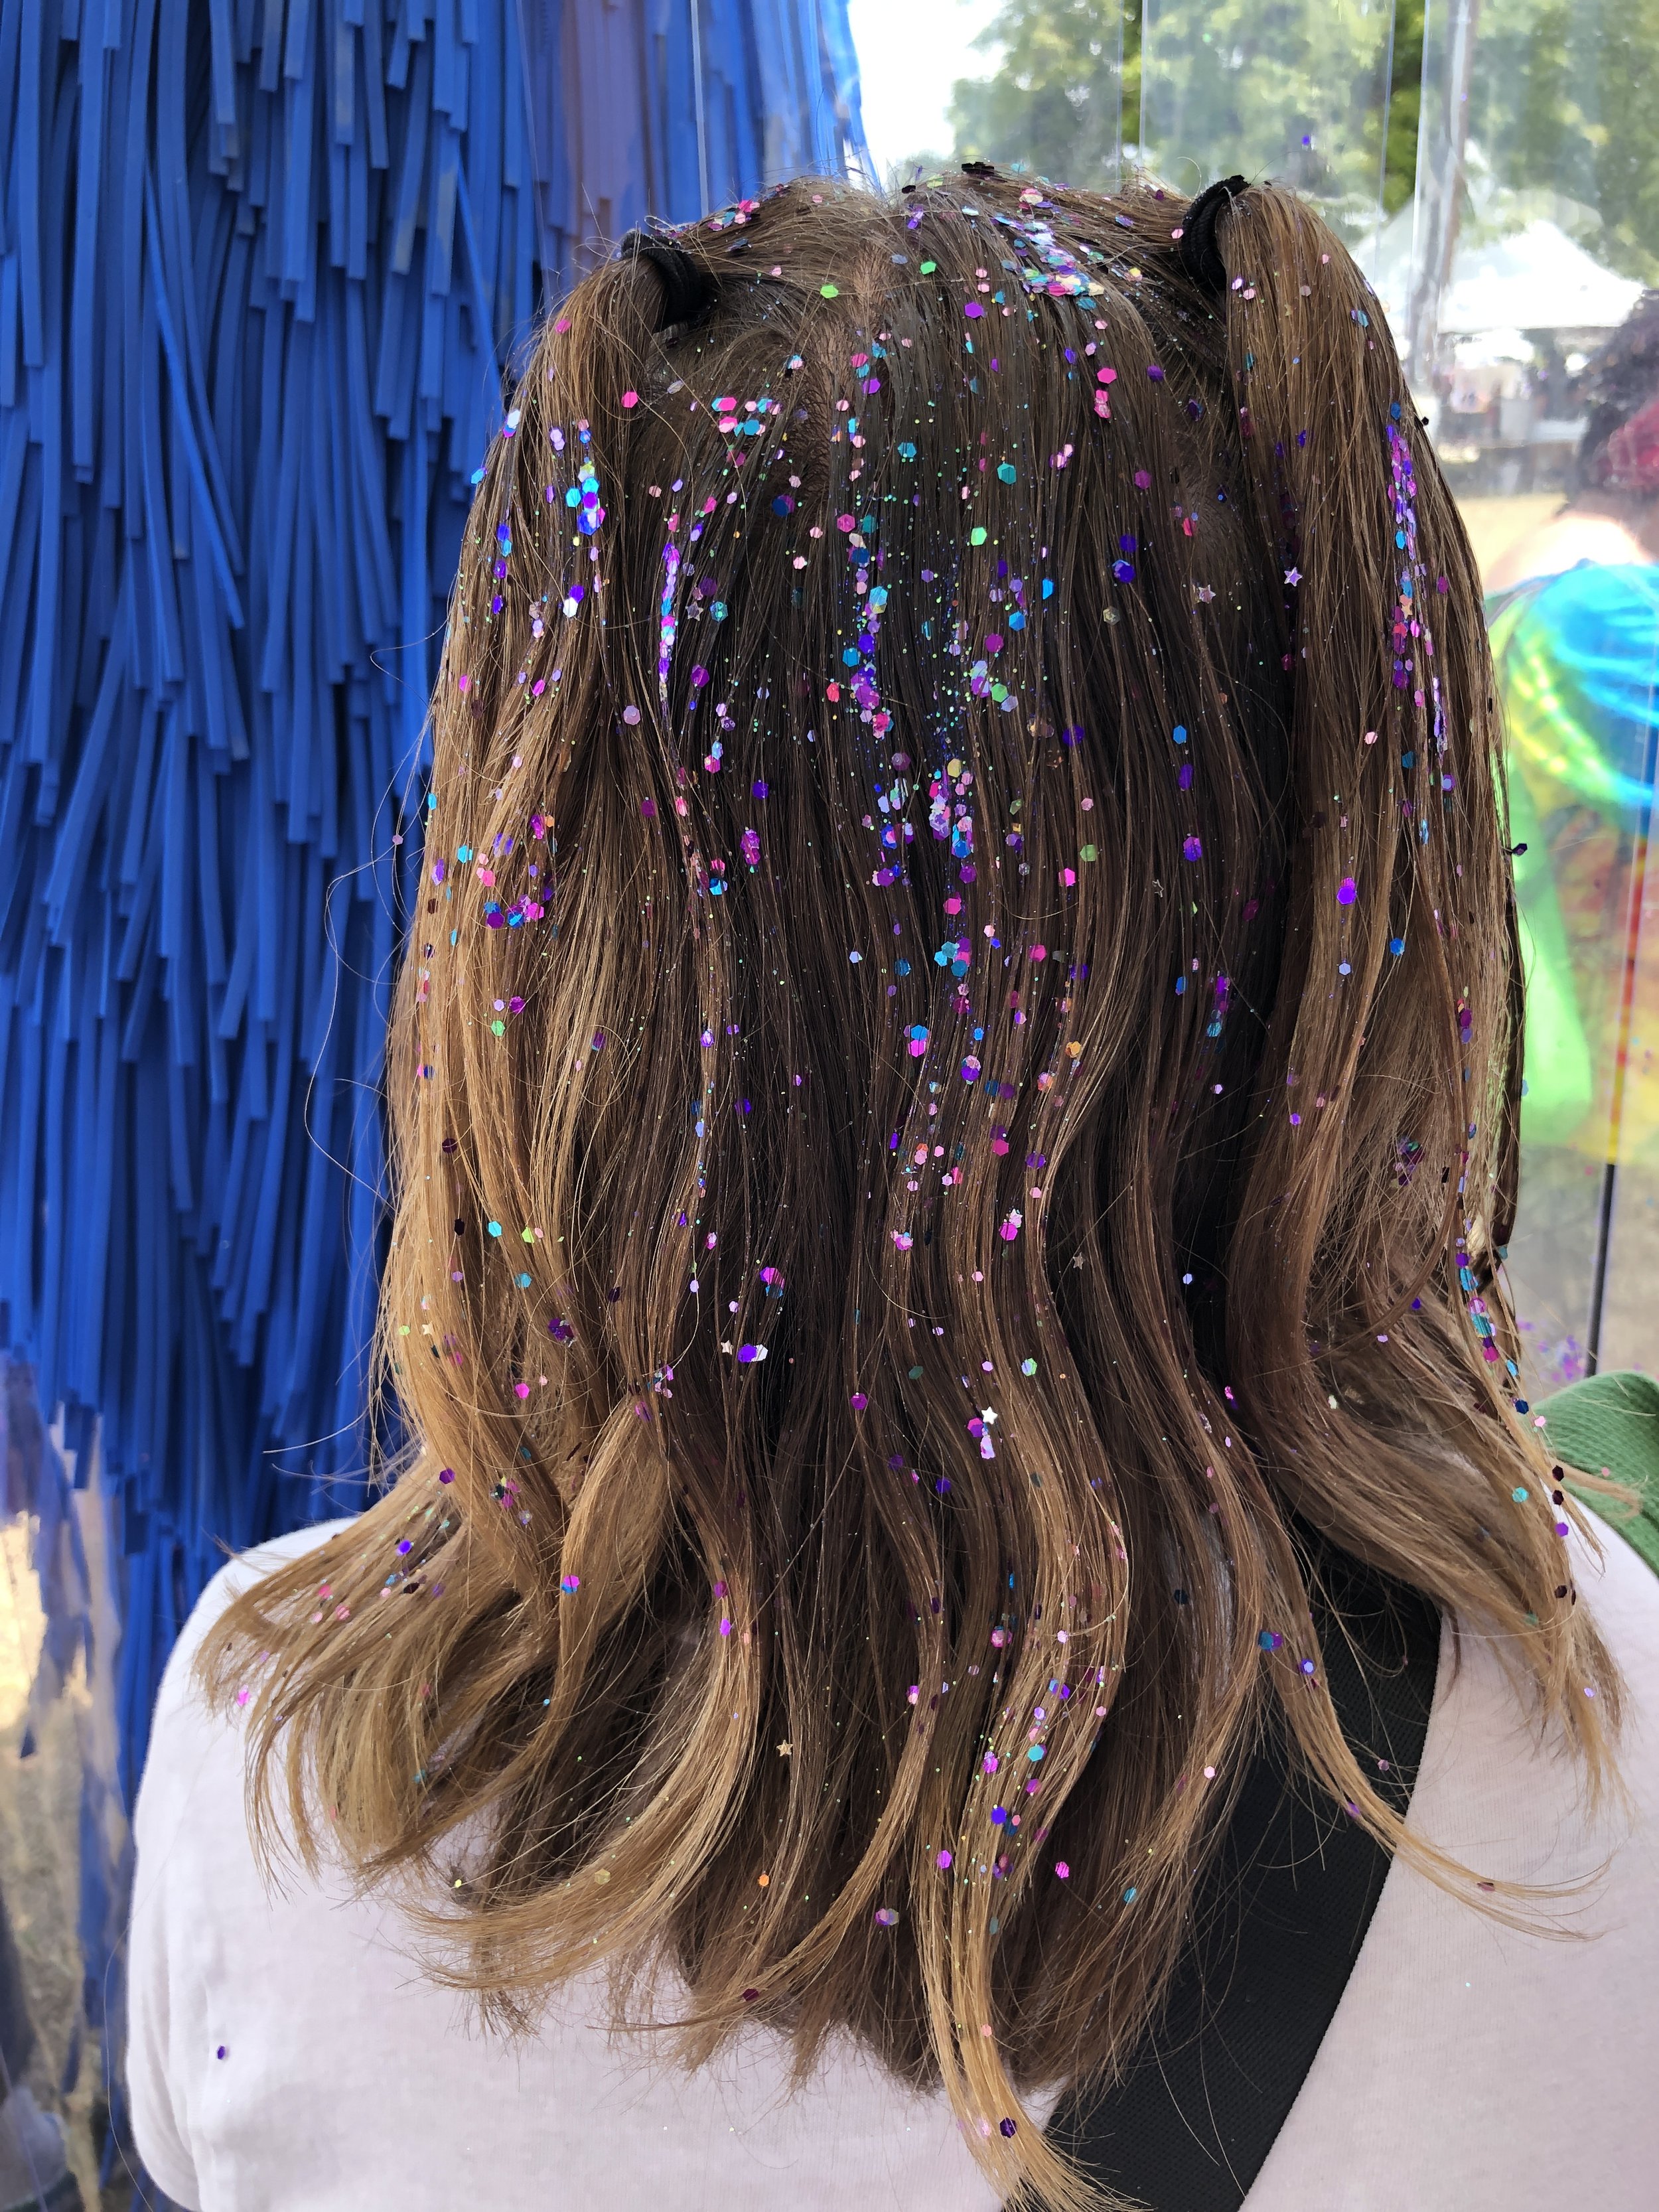 Hair Glitter for Kids Event New York City.JPG